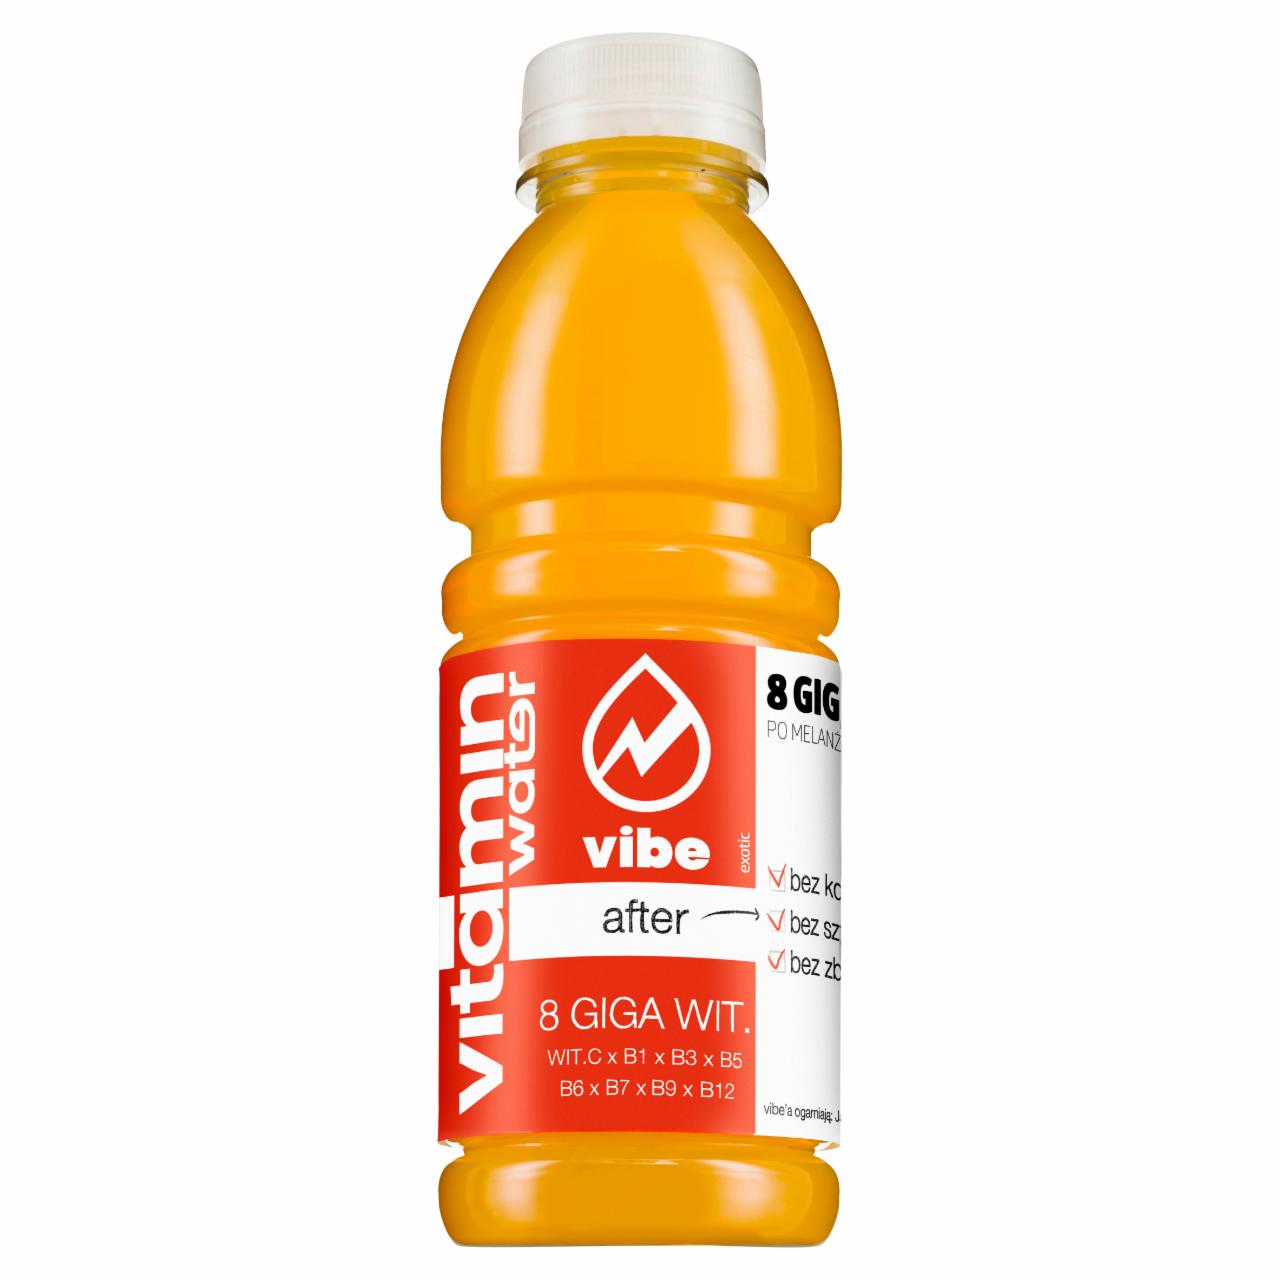 Zdjęcia - Vibe Vitamin Water After zawierający 8 Giga Wit. Napój niegazowany 500 ml